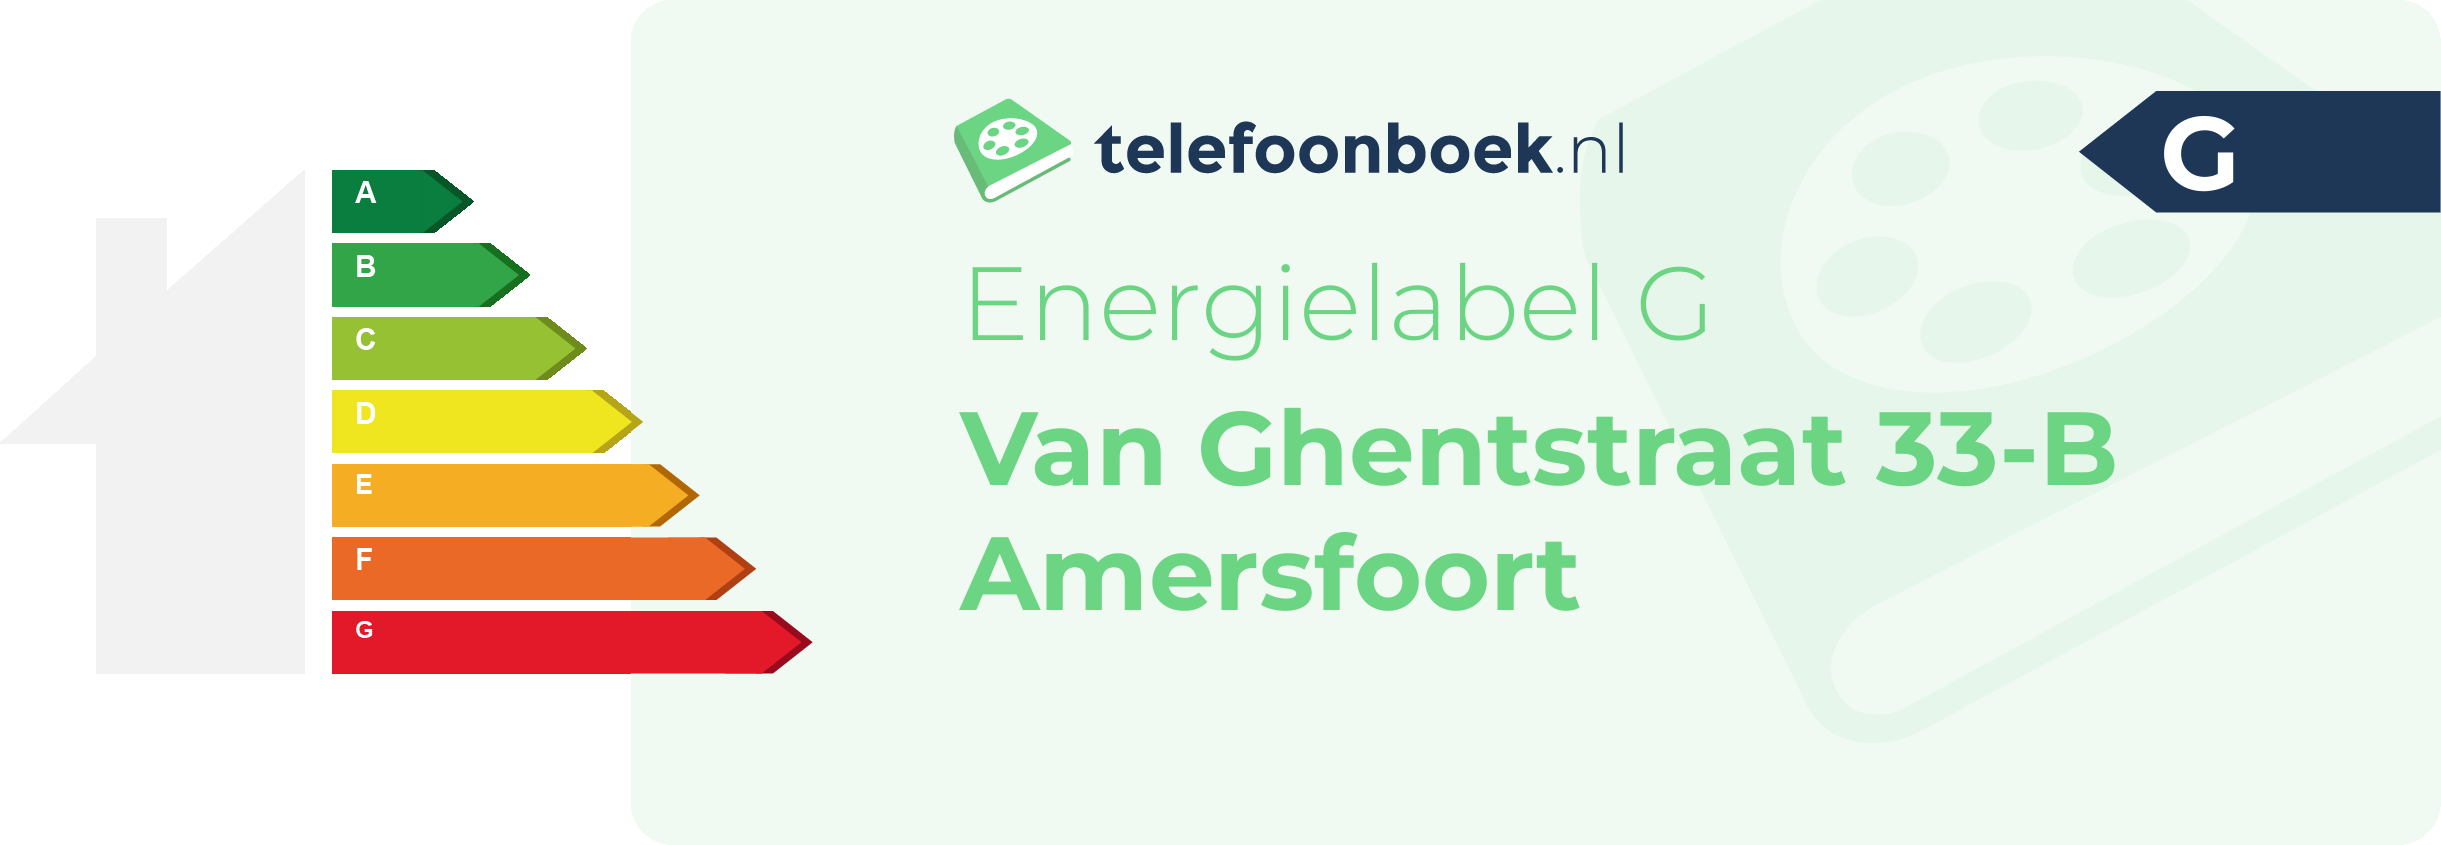 Energielabel Van Ghentstraat 33-B Amersfoort